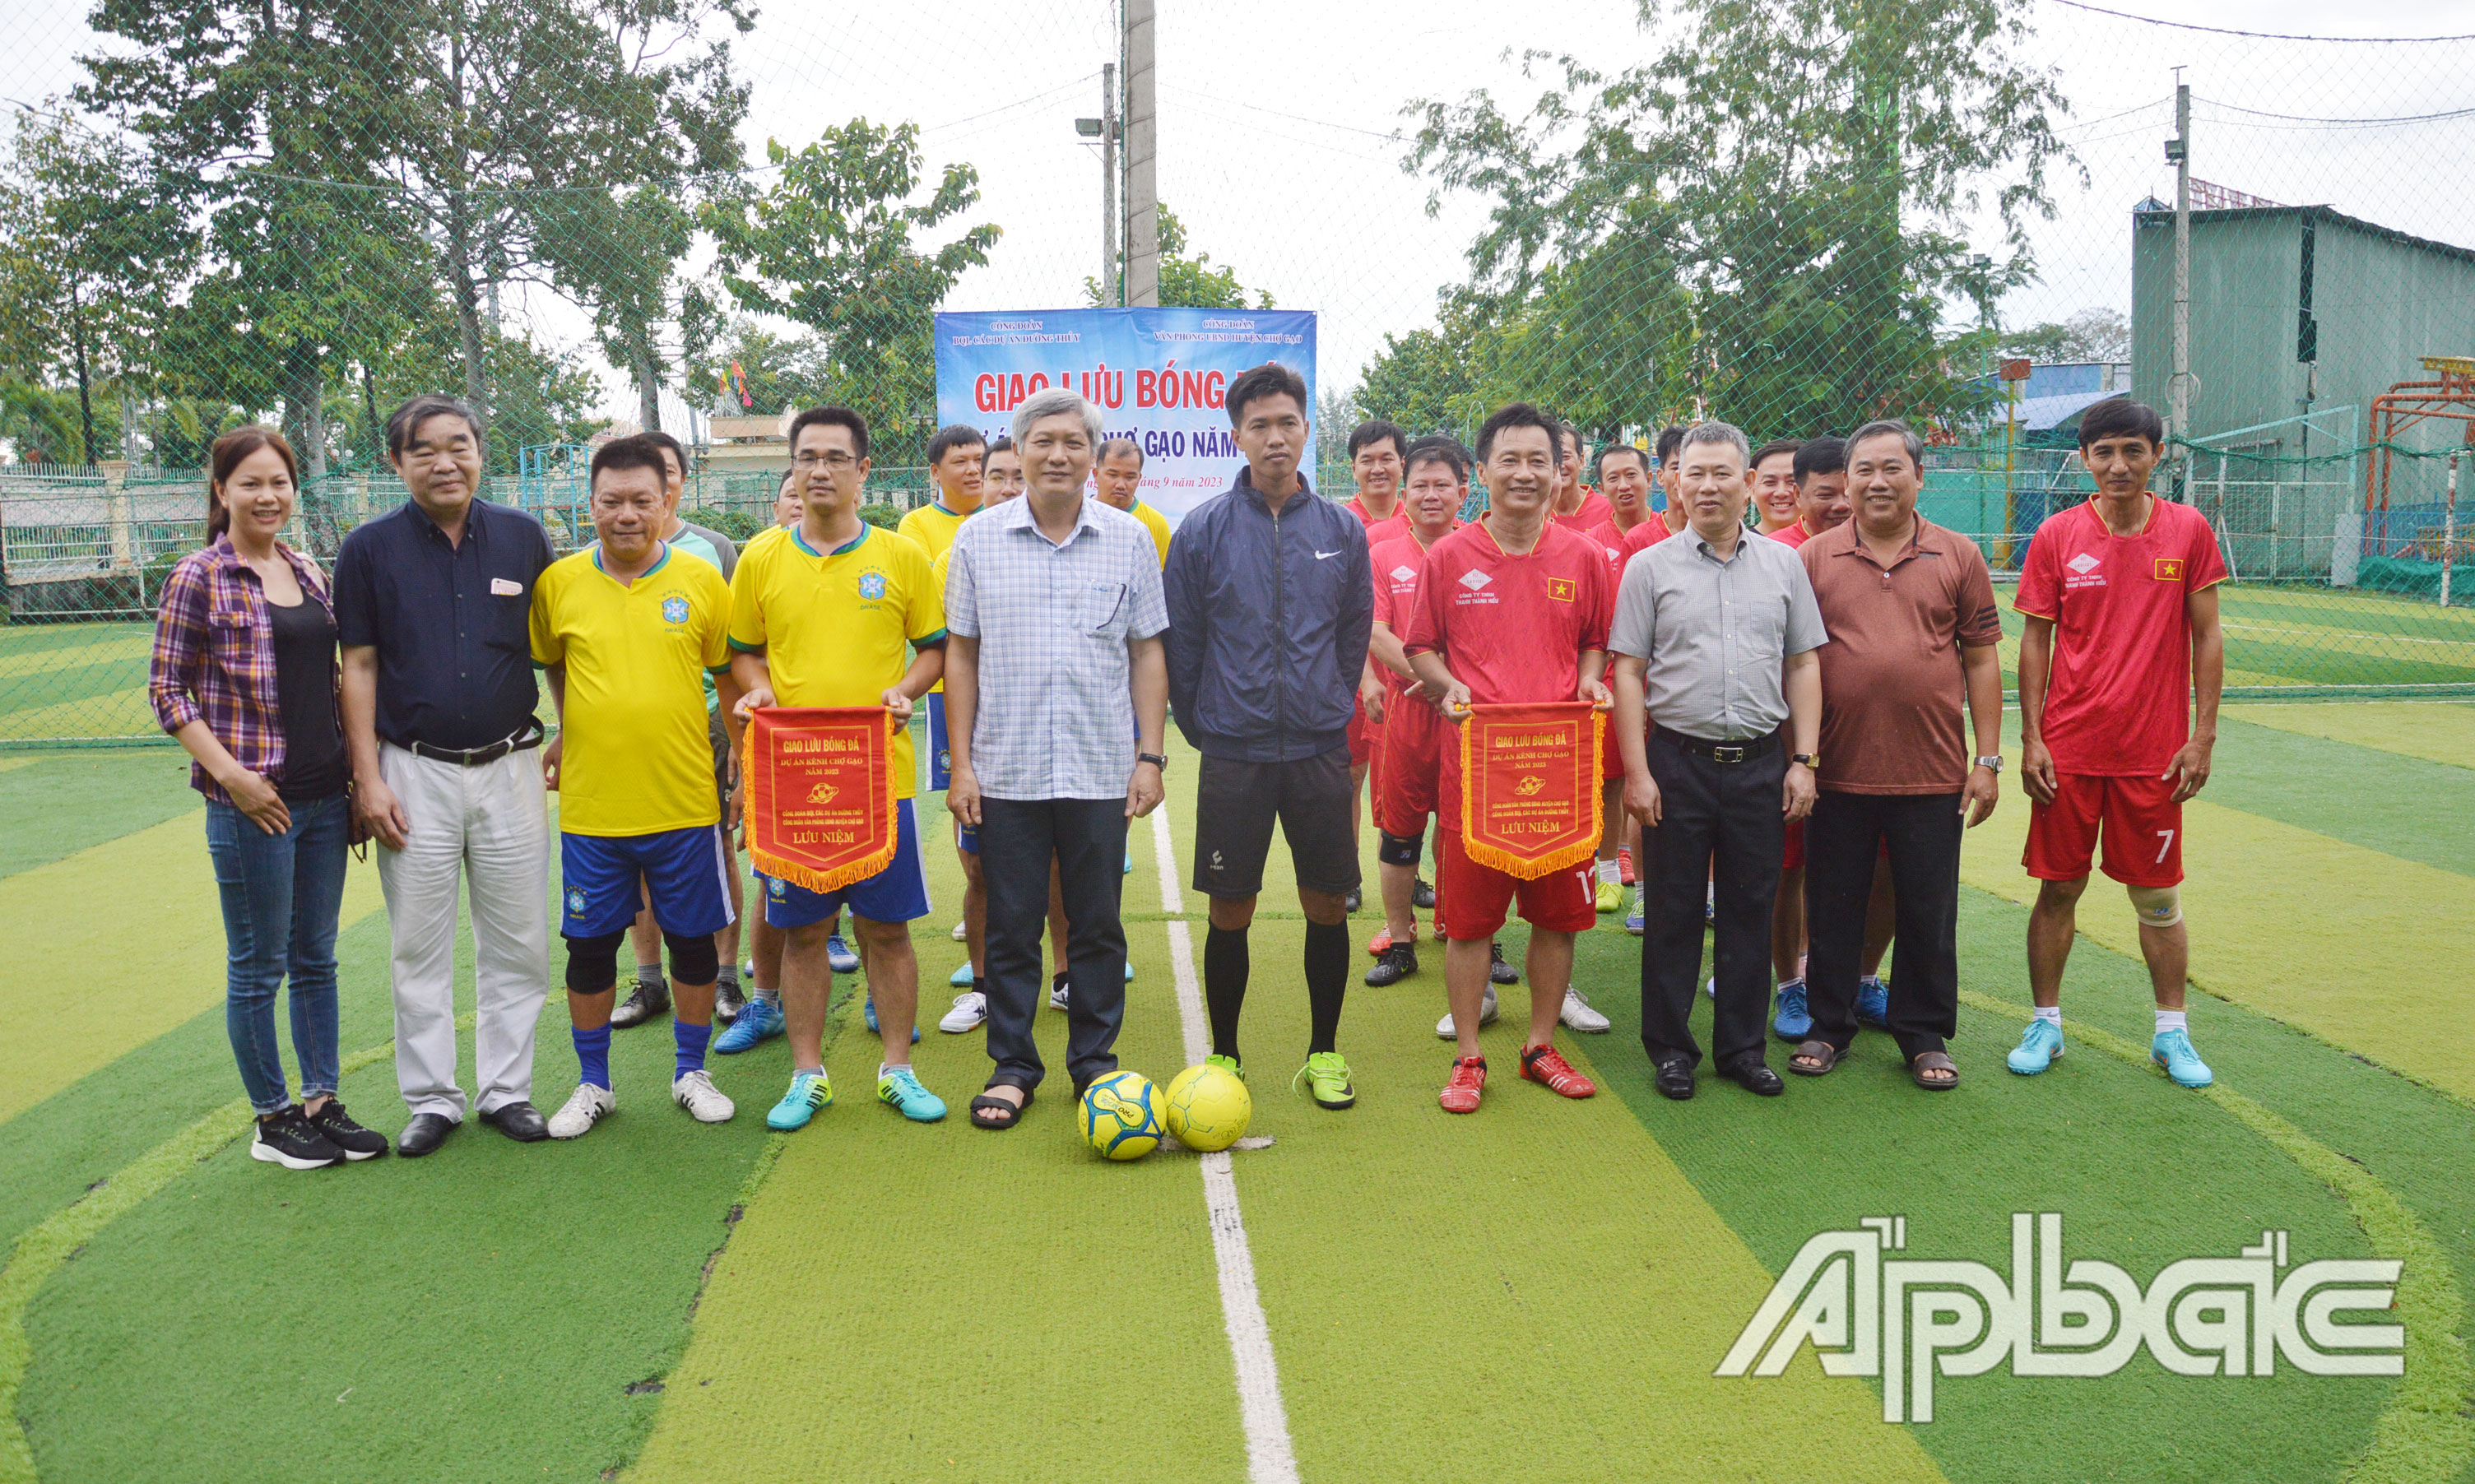 Lãnh đạo Ban Quản lý các dự án Đường thủy và UBND huyện Chợ Gạo tặng cờ luân lưu và quà lưu niệm cho các cầu thủ.